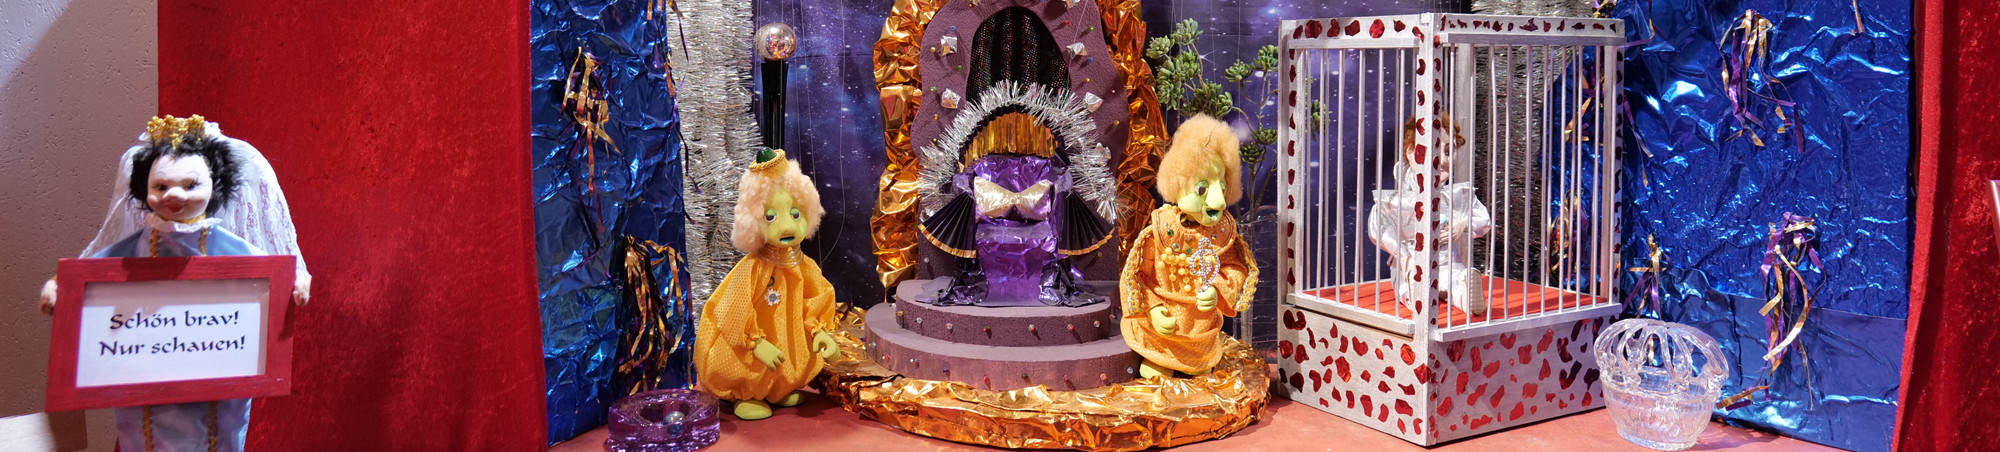 Futuristische Farb- und Kostümgestaltung, Prinz in Käfig soll zur Unterhaltung singen.